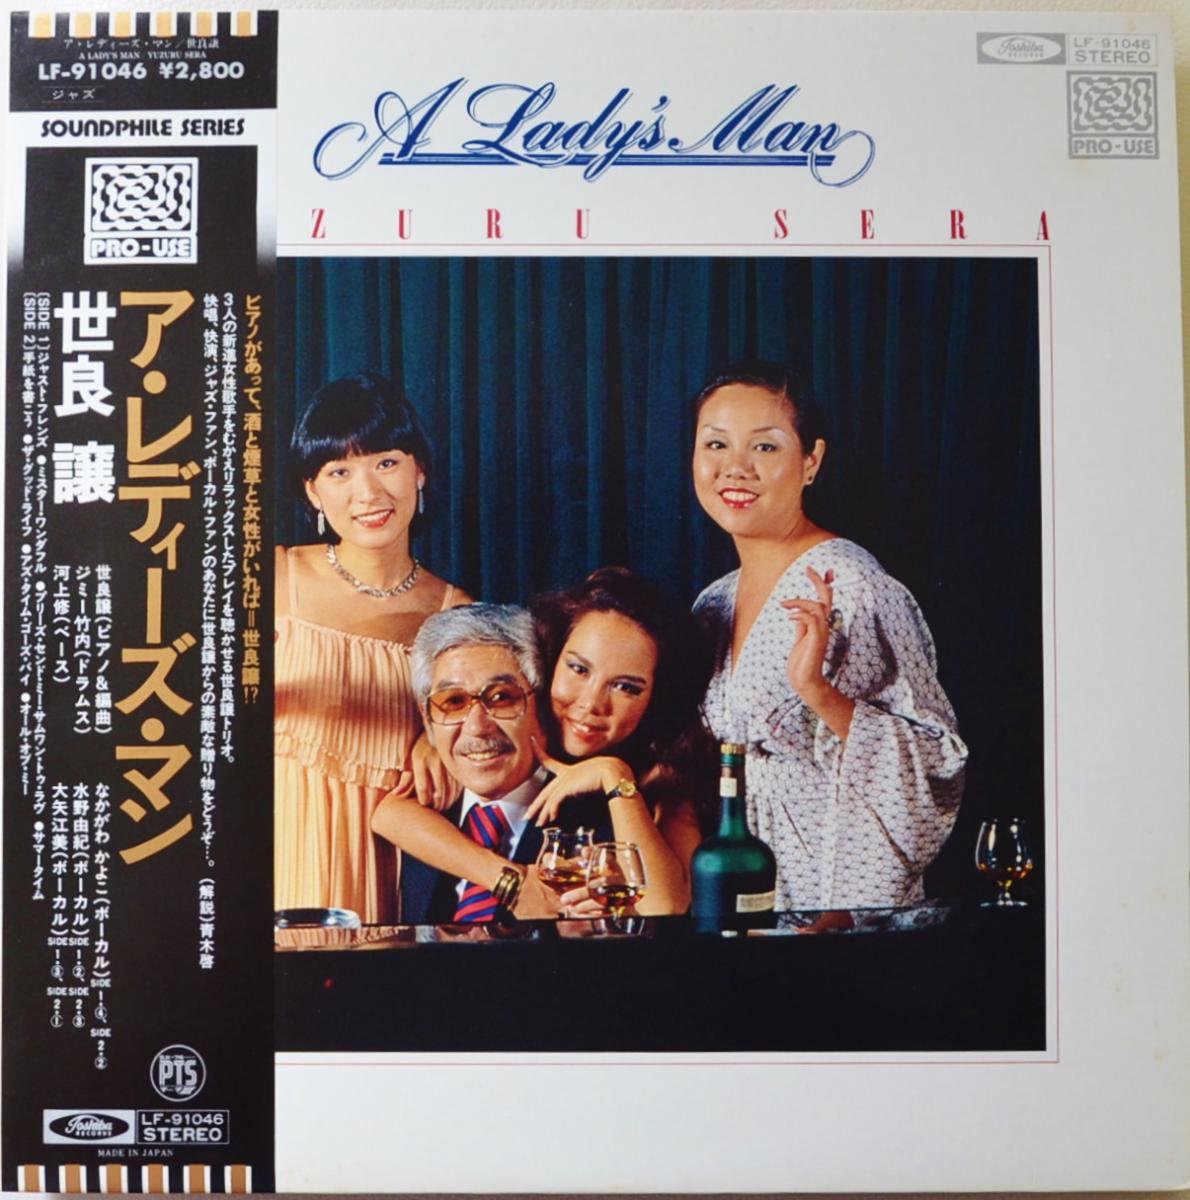 世良譲 YUZURU SERA / ア・レディーズ・マン A LADY'S MAN (LP) - HIP TANK RECORDS